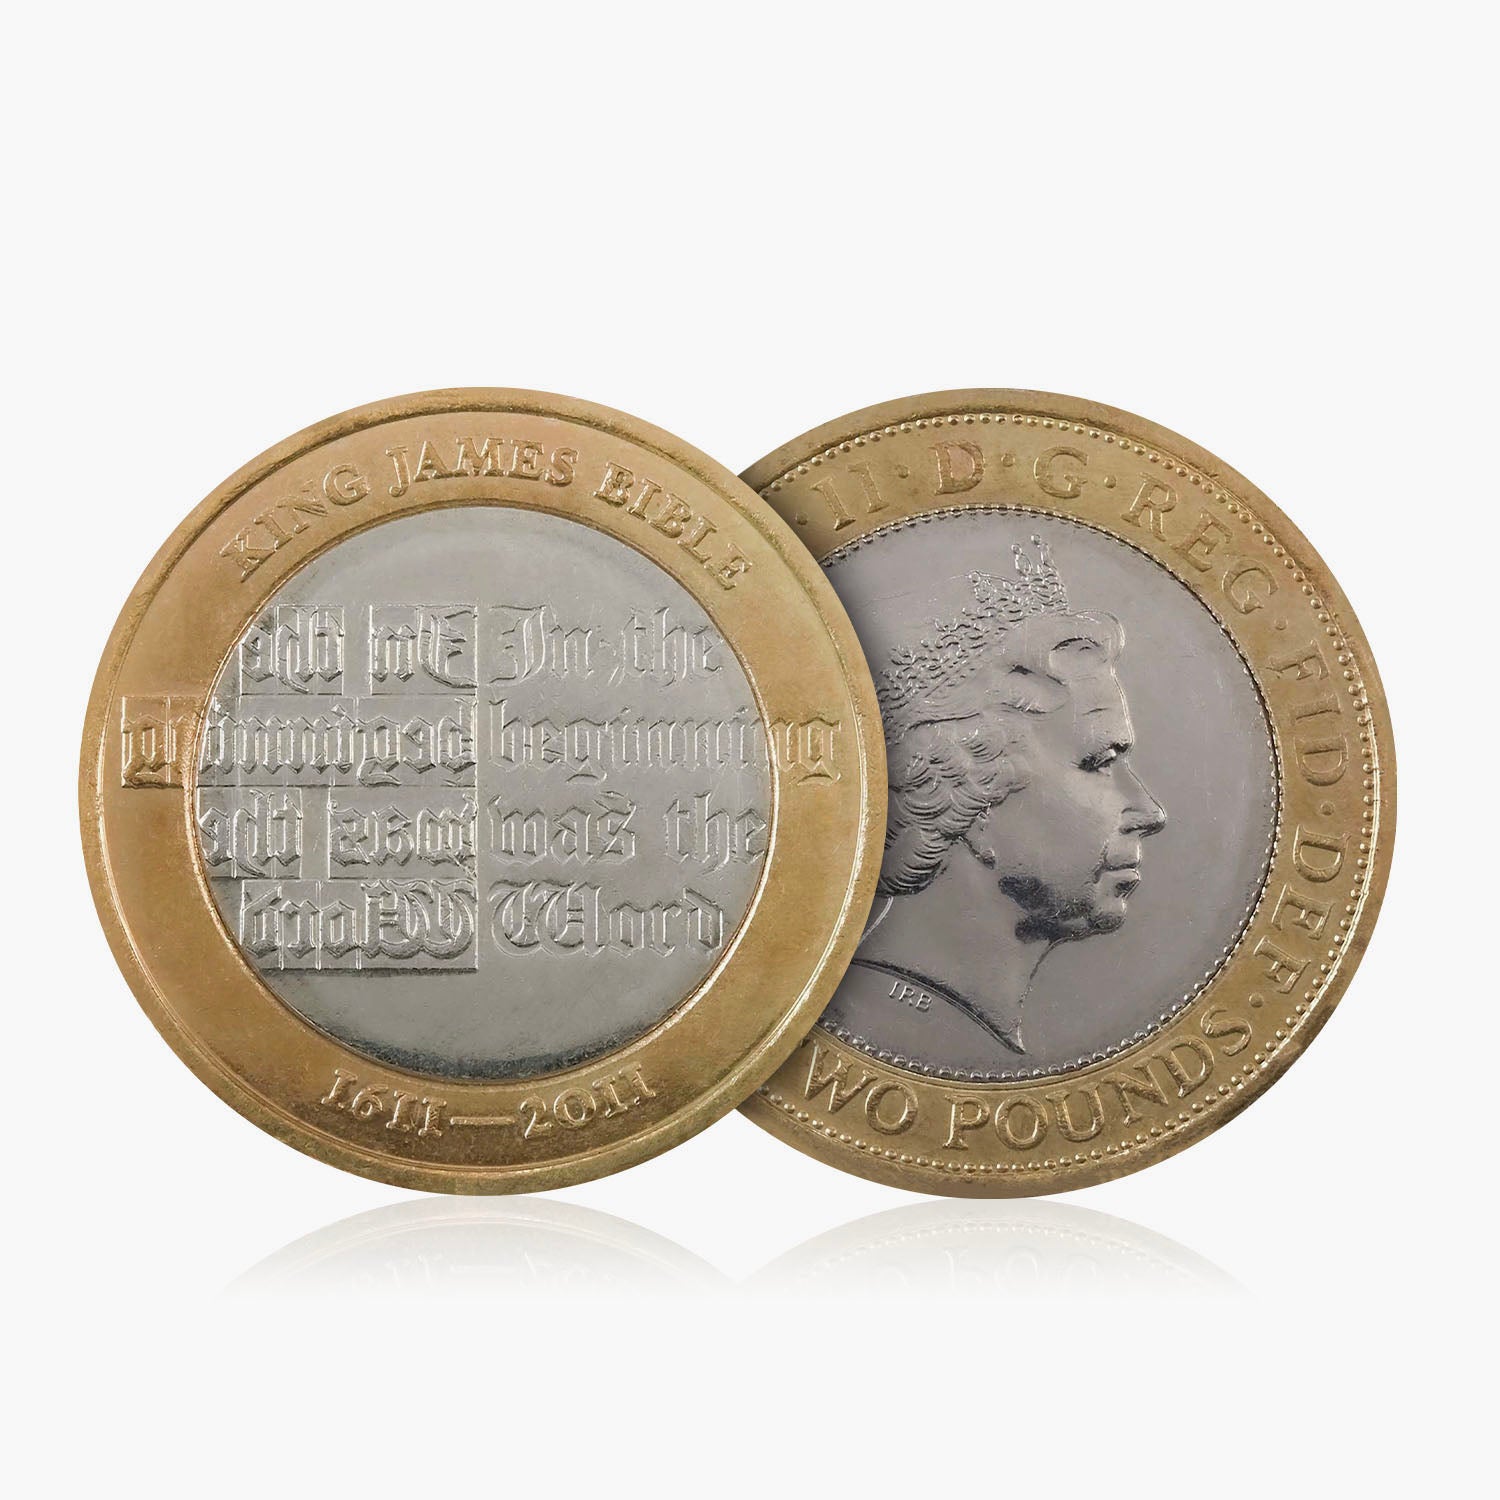 2011 Circulated King James Bible UK £2 Coin